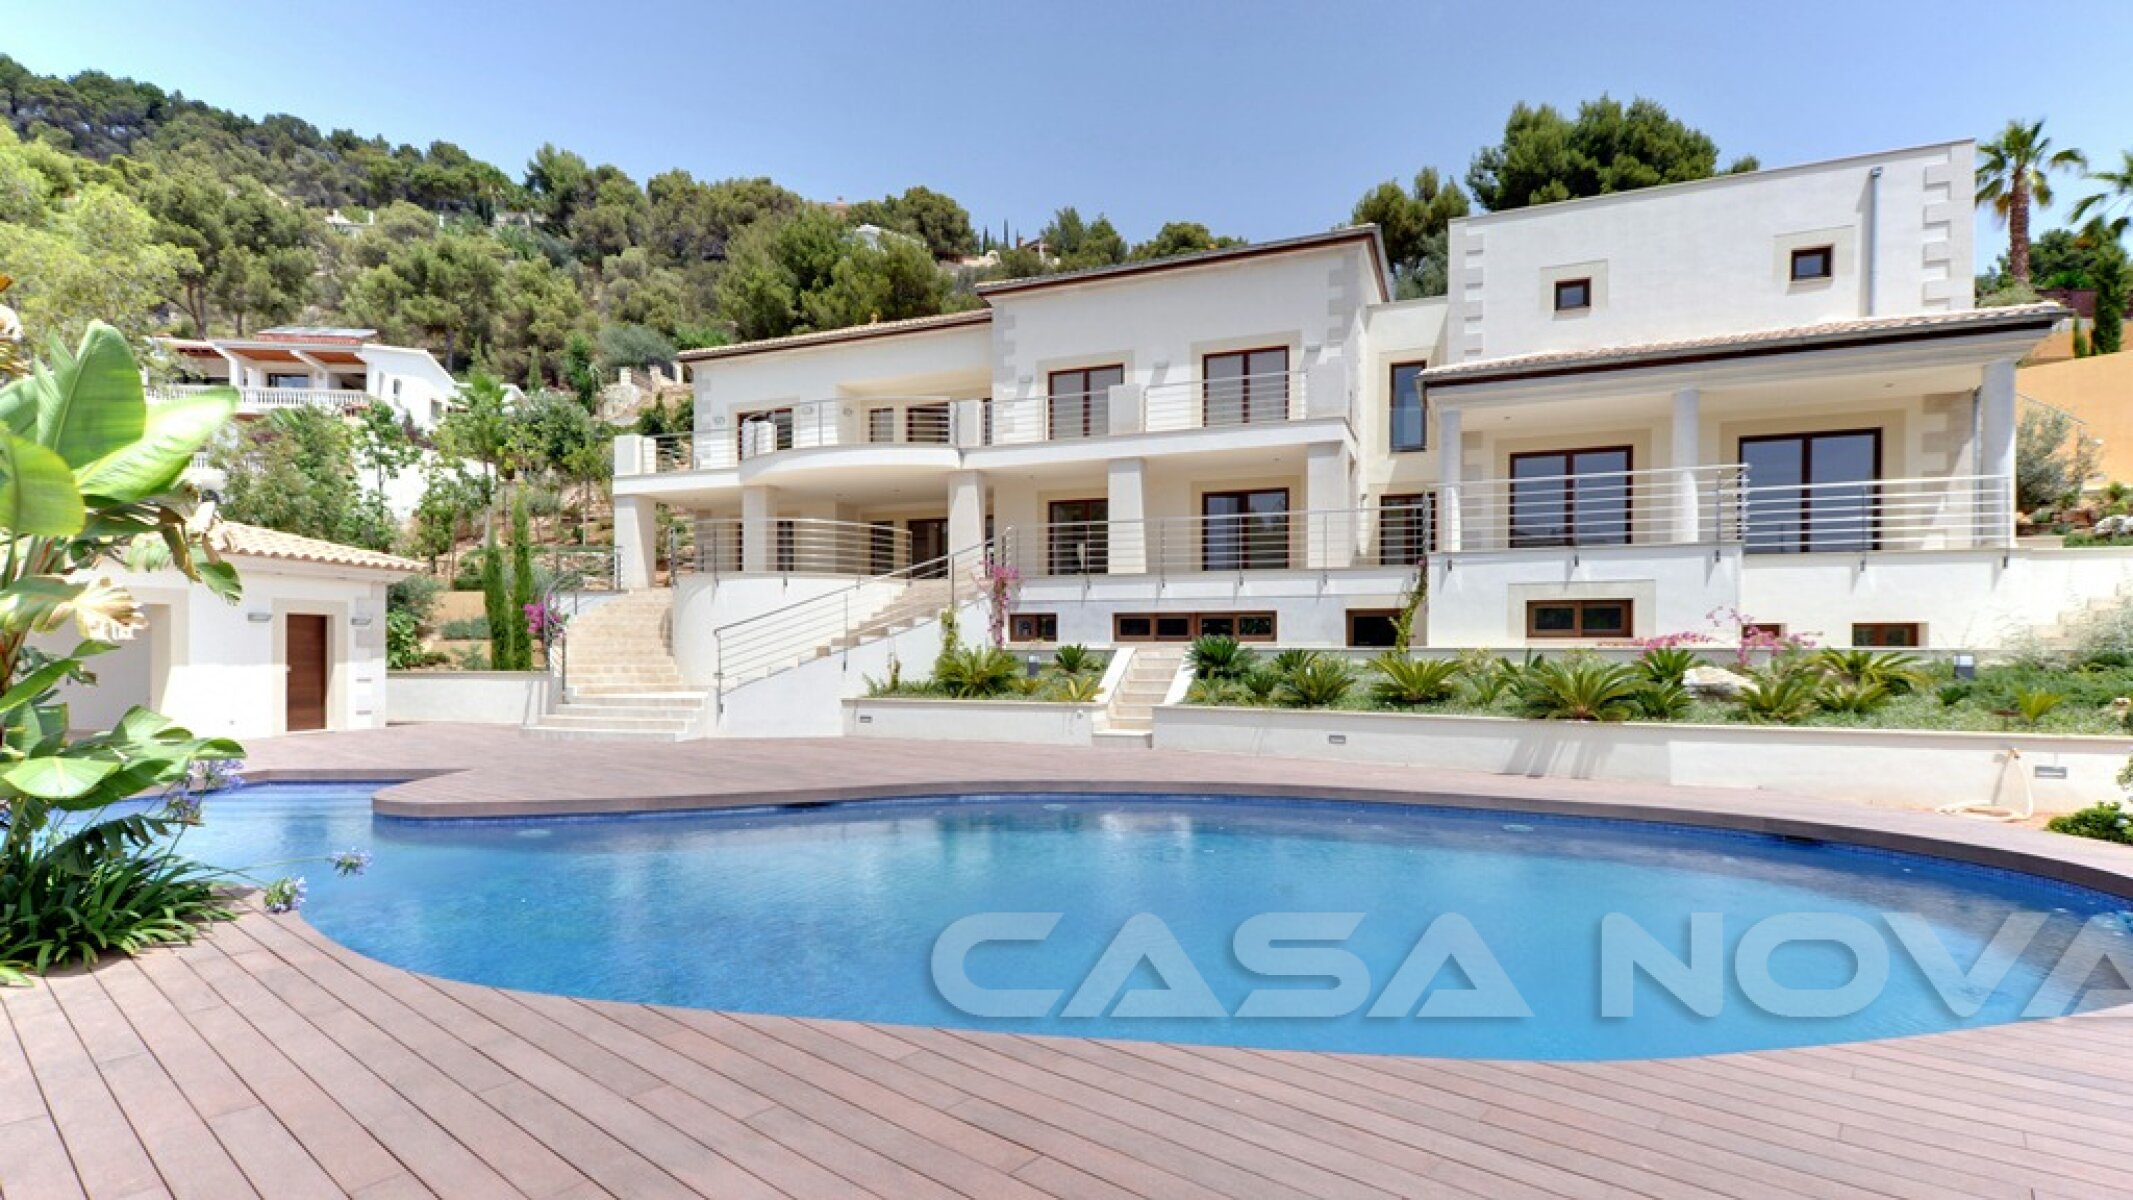 Propiedad en Mallorca con fant�stica piscina y terrazas para tomar el sol